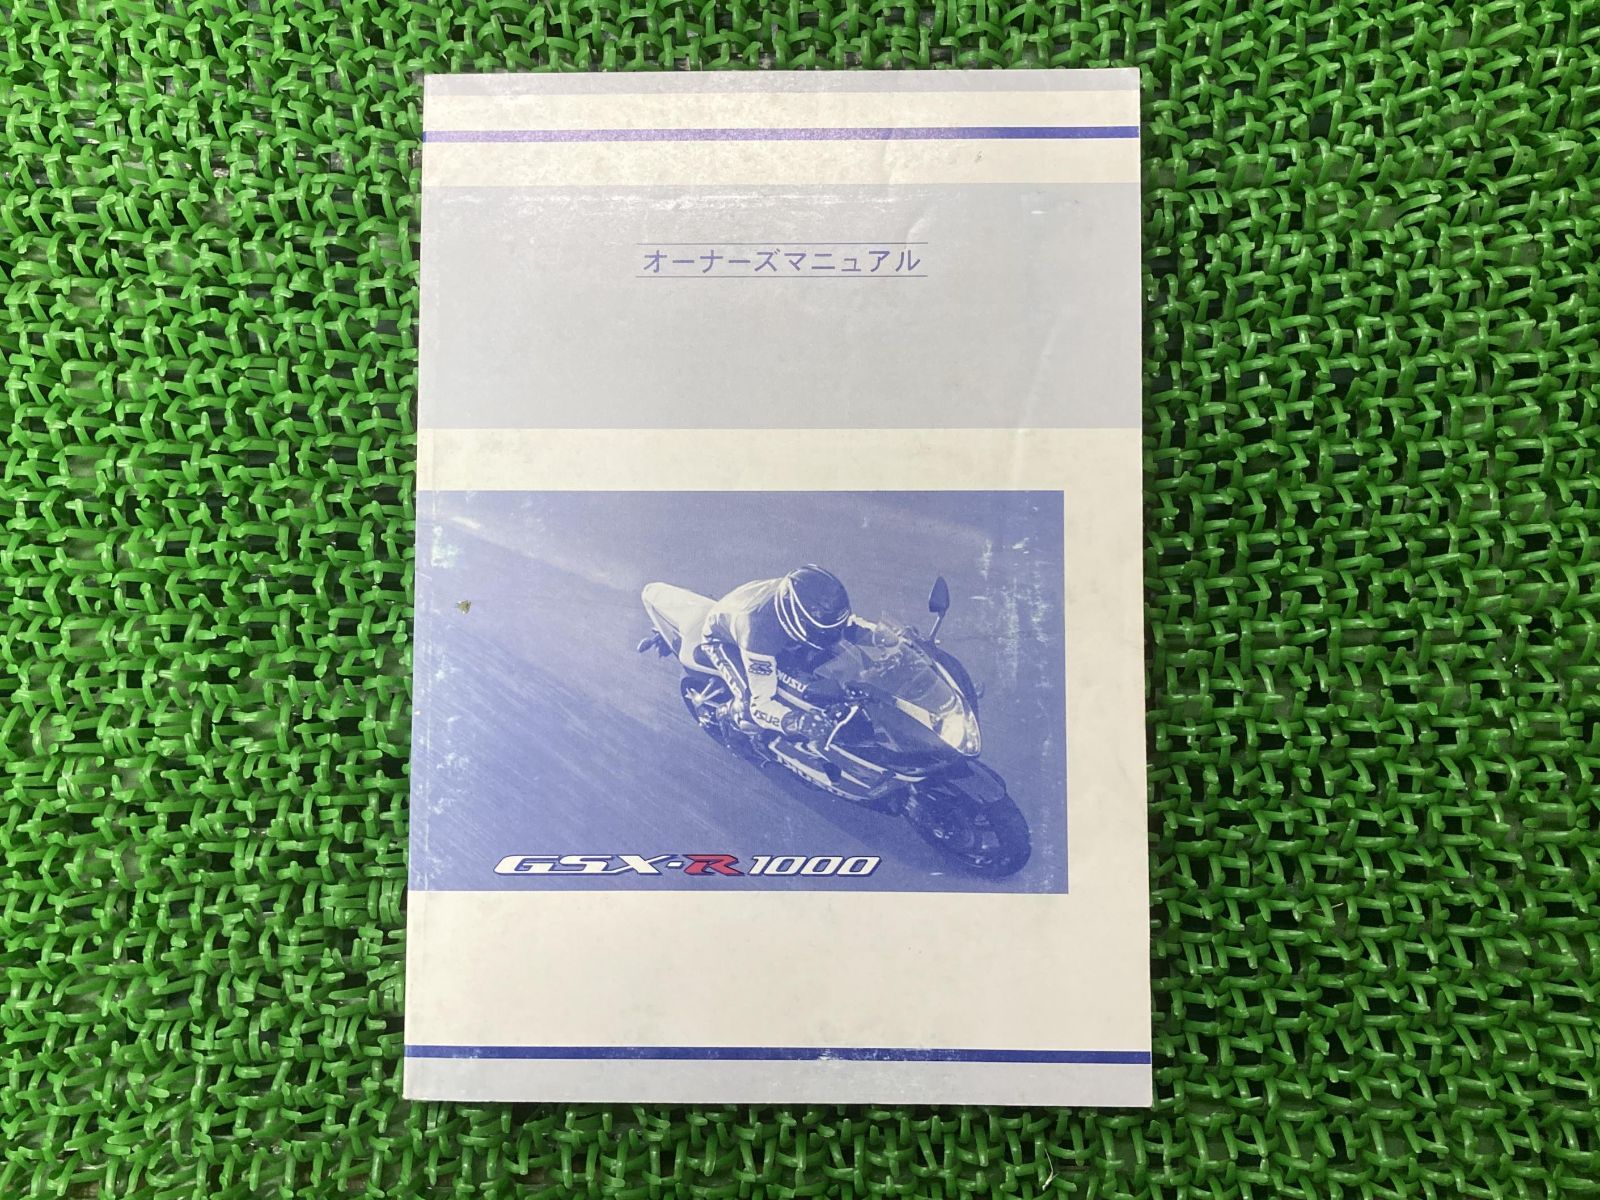 GSX-R1000 取扱説明書 社外 バイク 部品 スズキ SUZUKI オーナーズマニュアル カキウチ株式会社 メンテナンス用品 